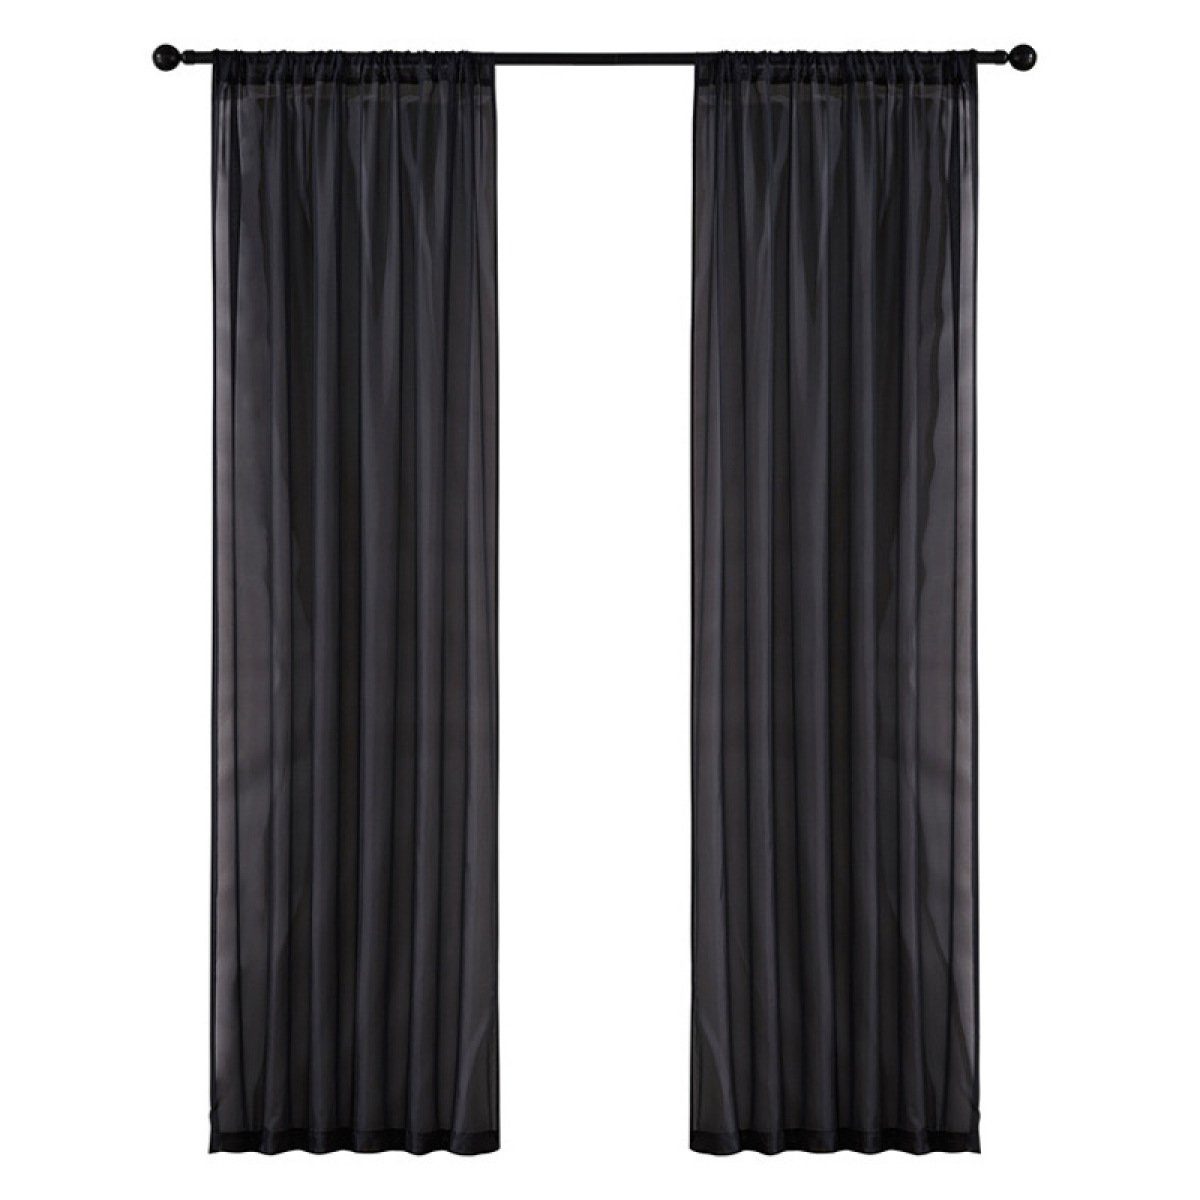 Gardine Gardinen Vorhang transparent für Fensterschal Wohnzimmer Schlafzimmer, Jormftte schwarz